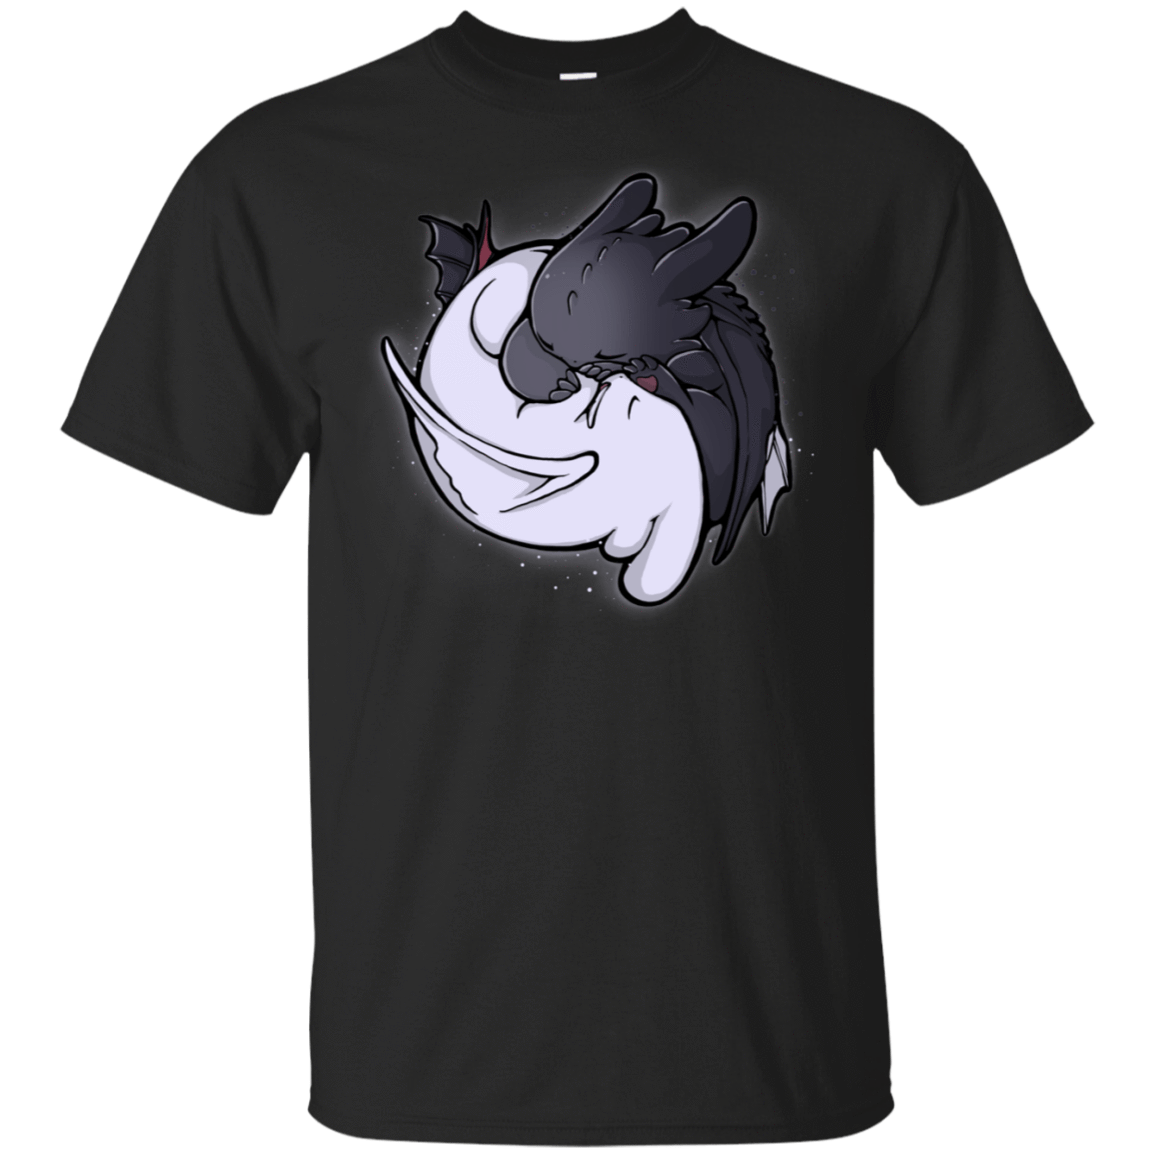 T-Shirts Black / S Dragon Tao T-Shirt